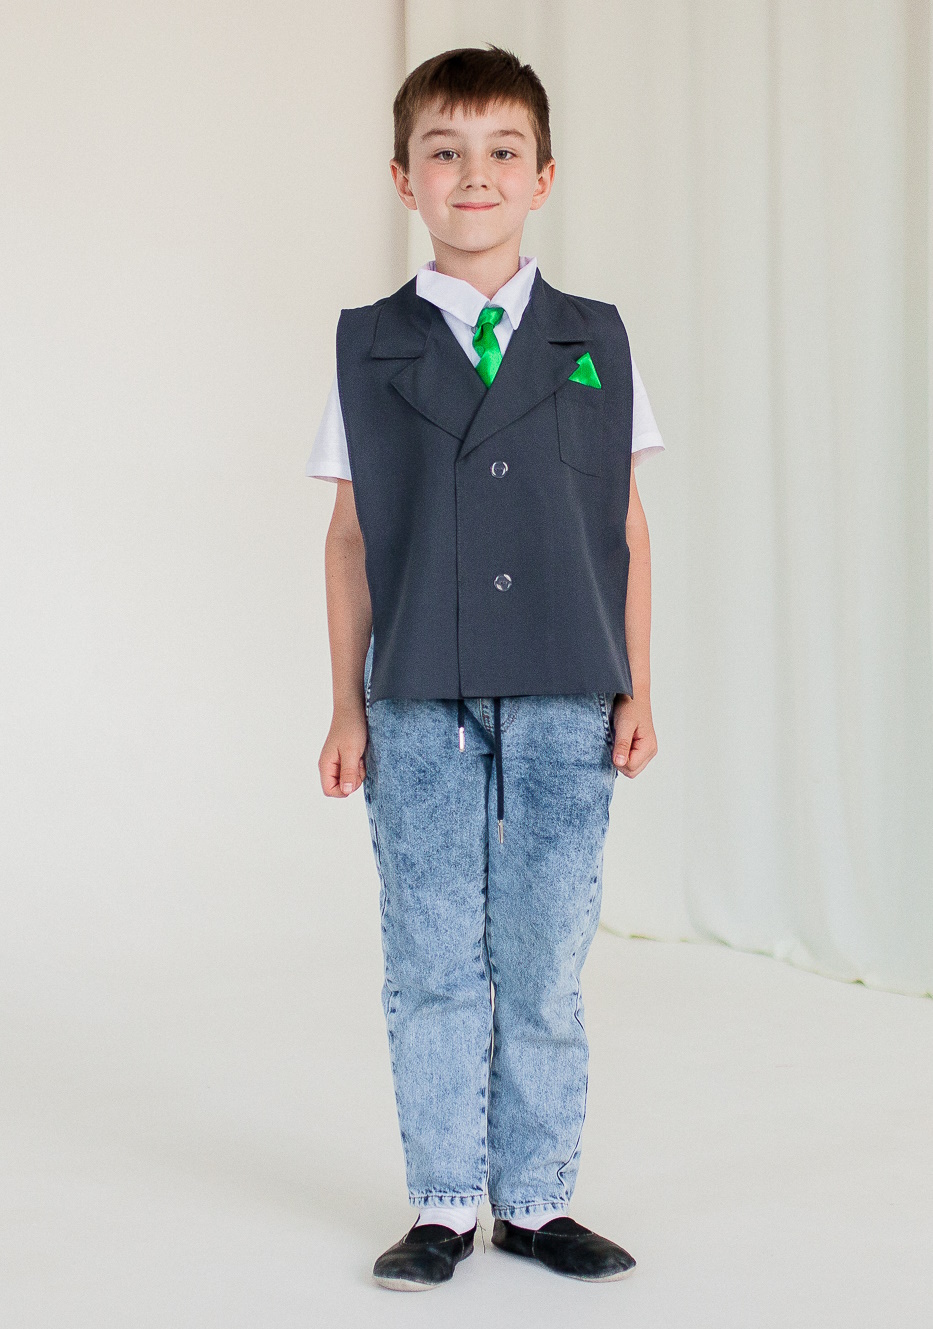 картинка Костюм детский профессия: Менеджер (накидка - имитация пиджака с галстуком и рубашкой), МВ от магазина ДетсадЯр